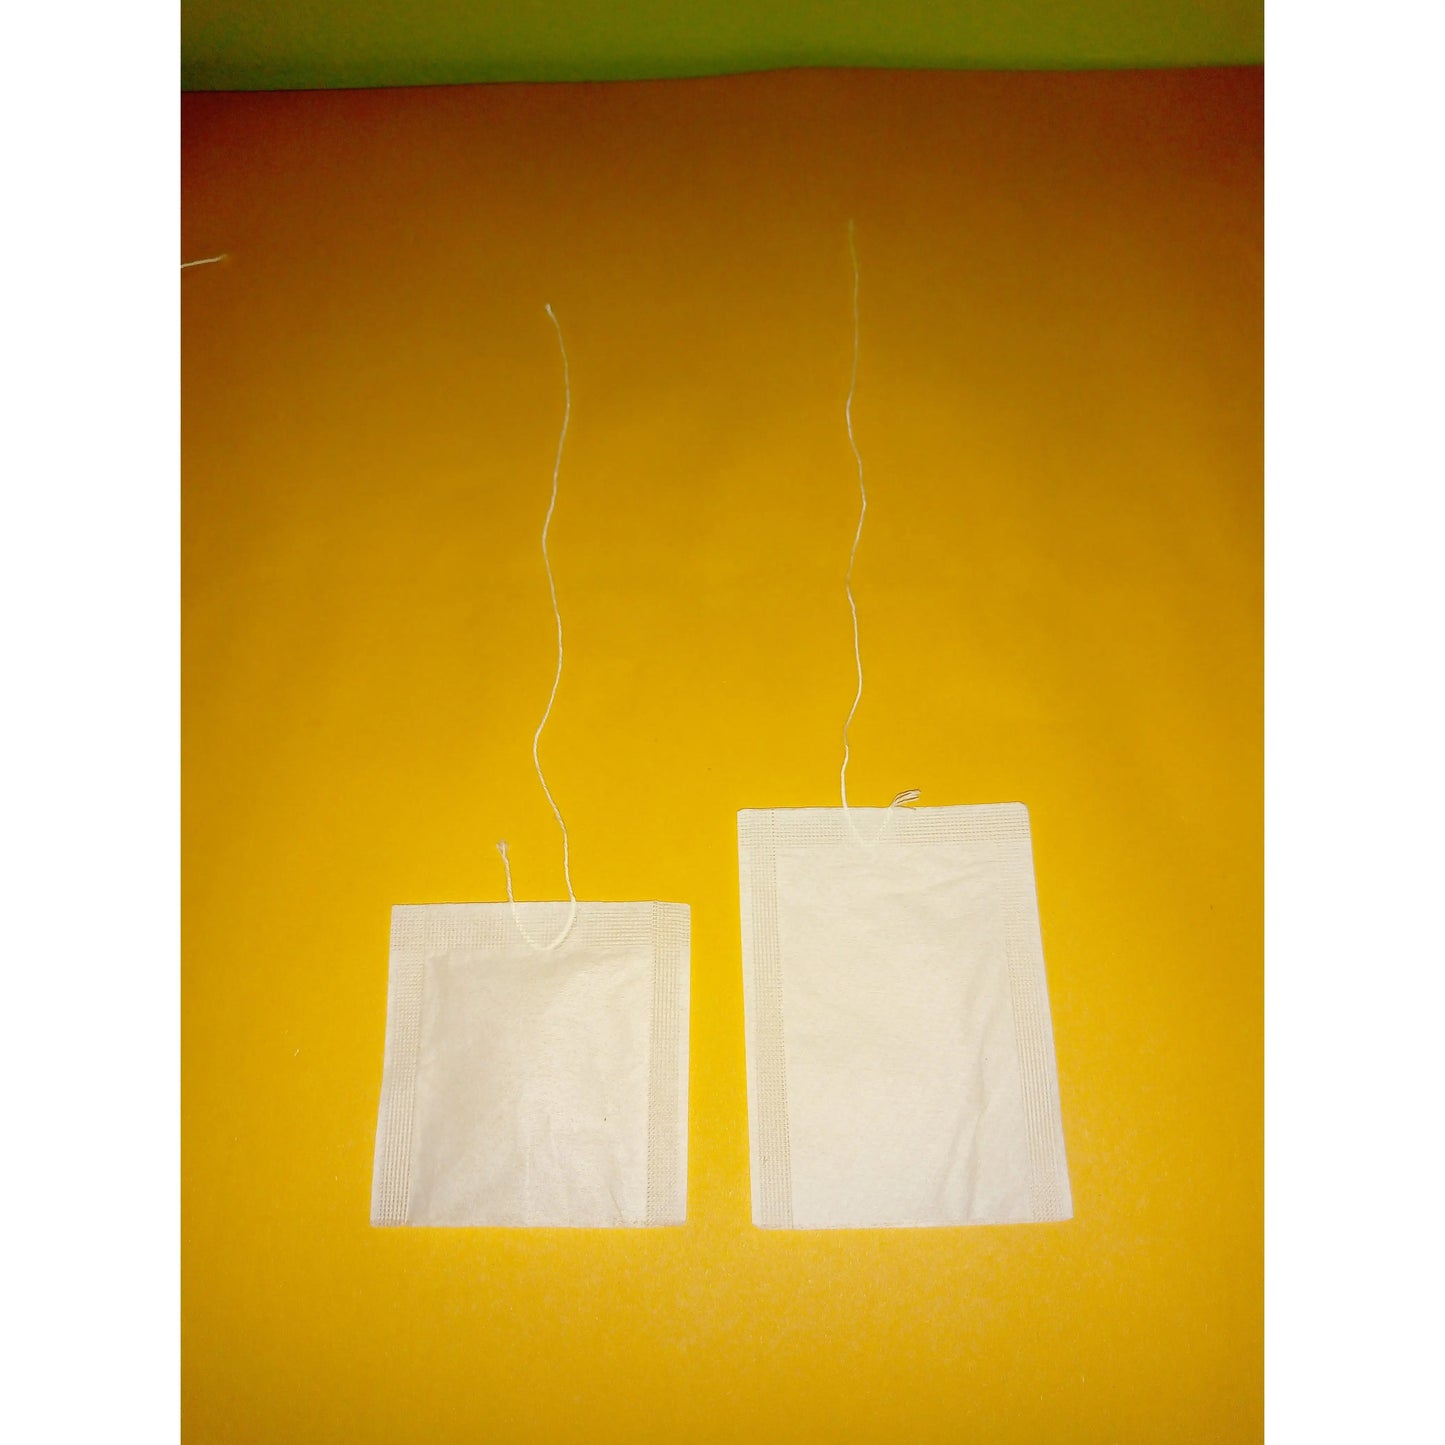 Filtrante papel filtro con 01 hilo La Semillita Peruana